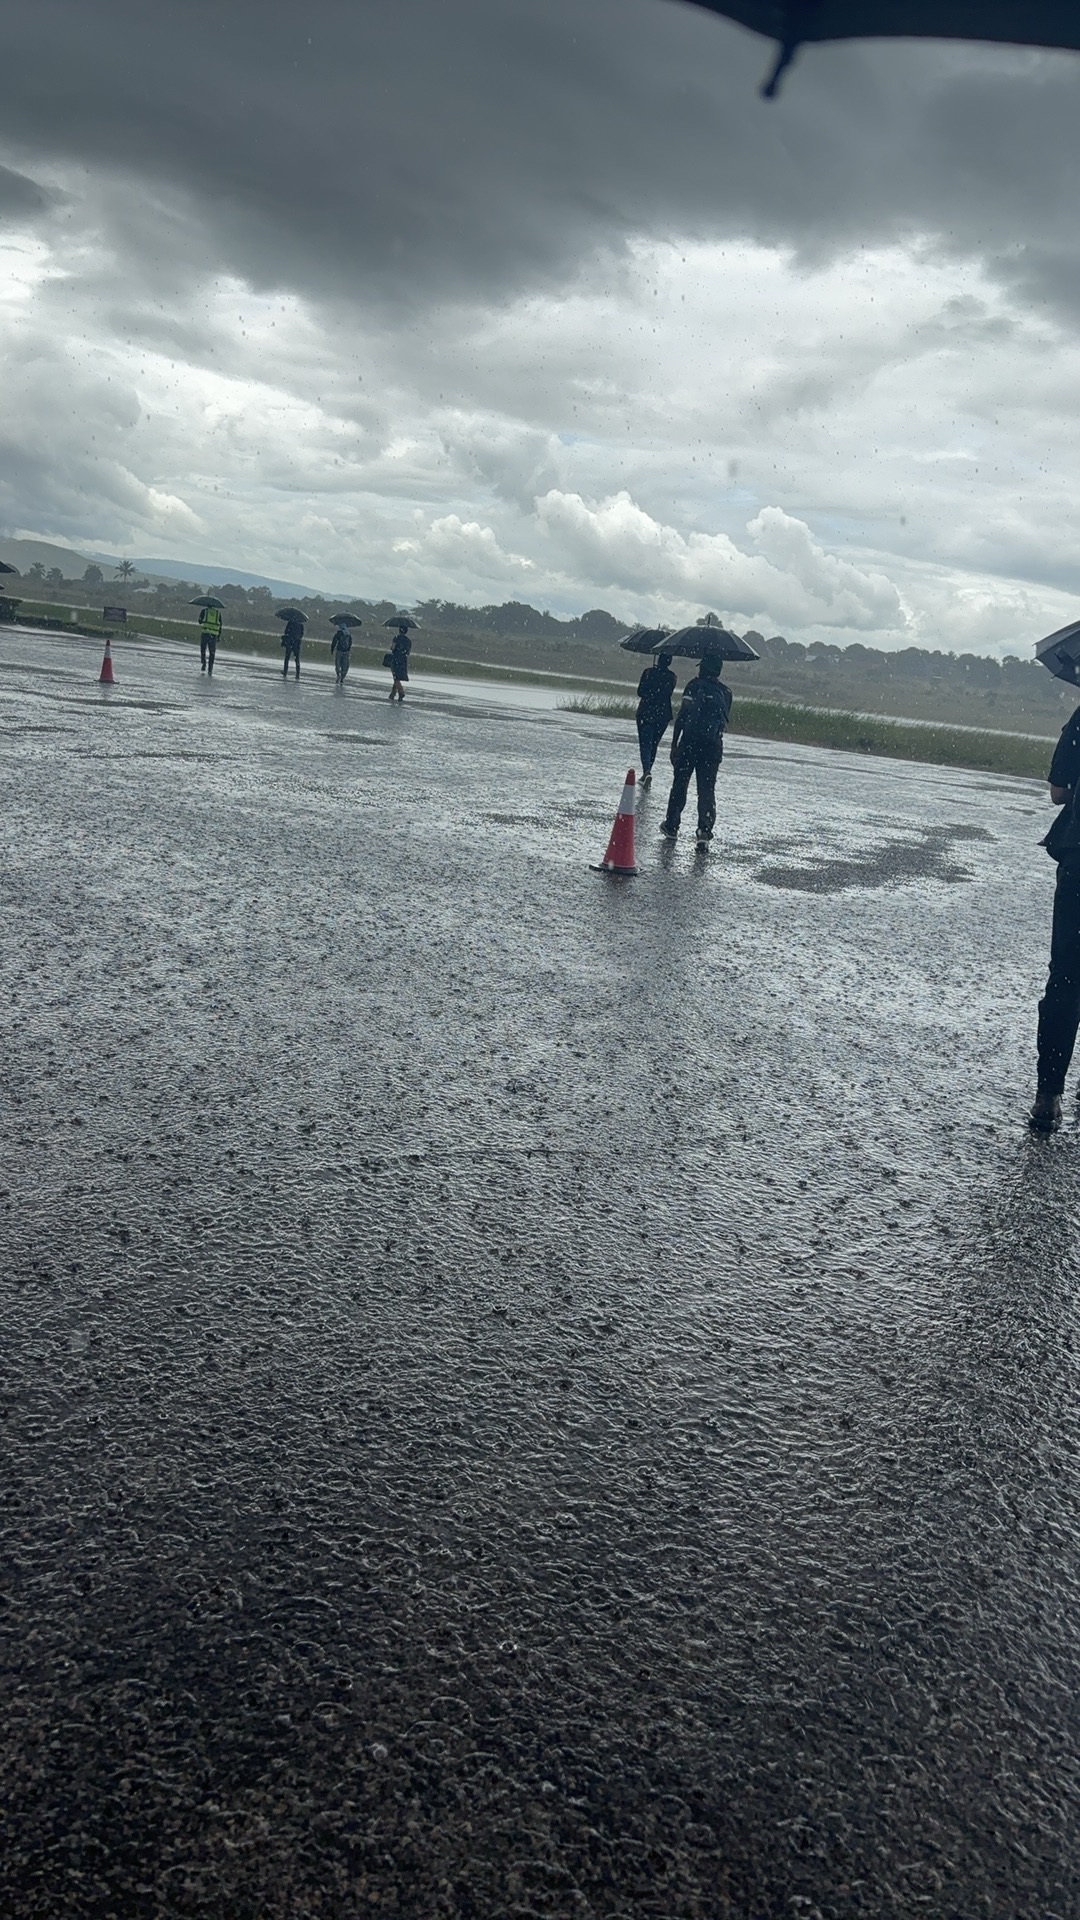 印象深刻的是机场，飞机降落时下着大雨，感觉飞机在水面上漂移；然后打开机舱门，旁边工作人员撑着伞迎接乘